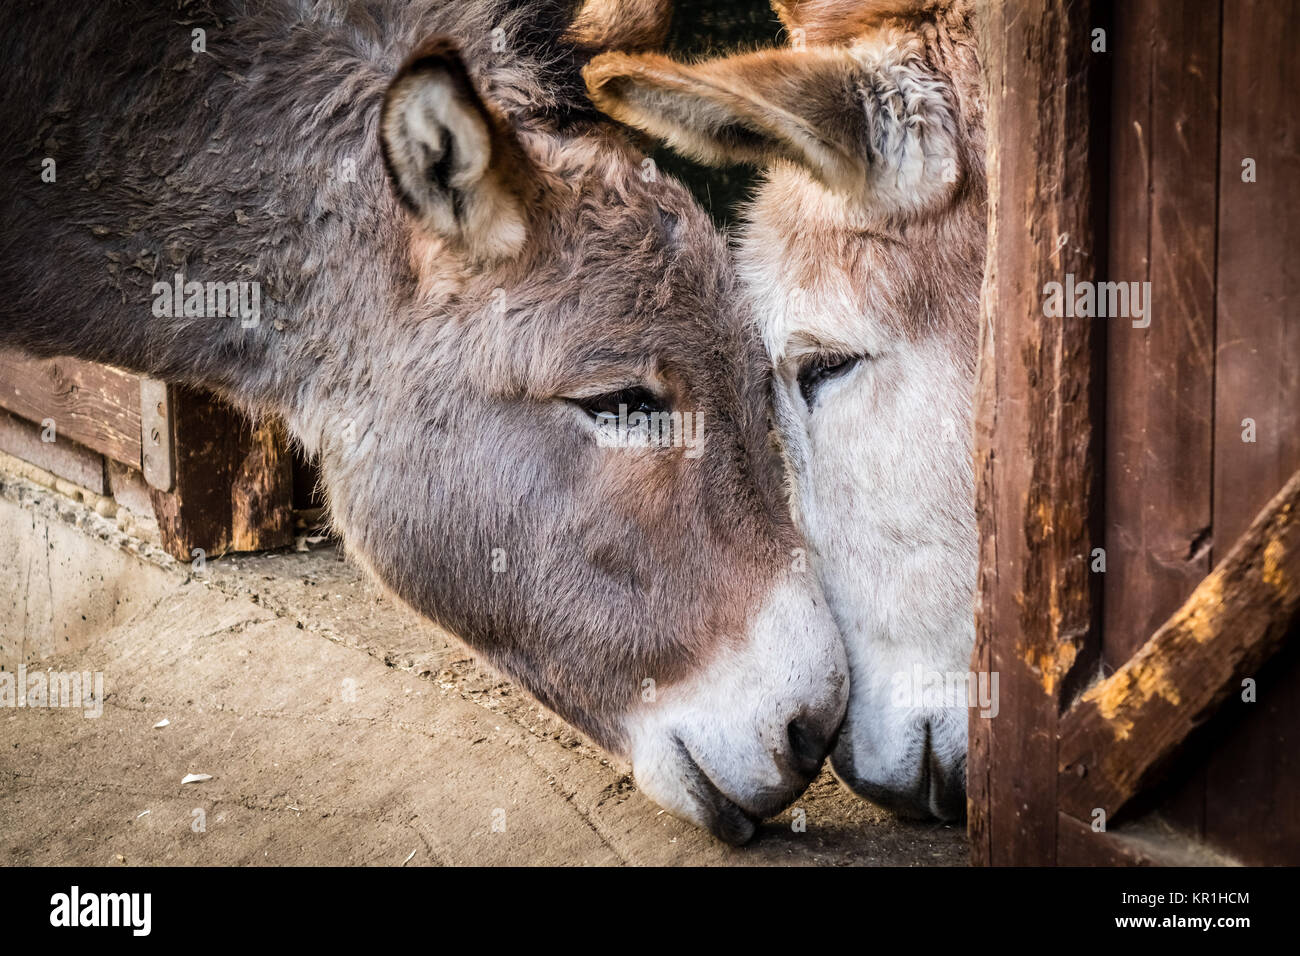 Donkey in love Stock Photo